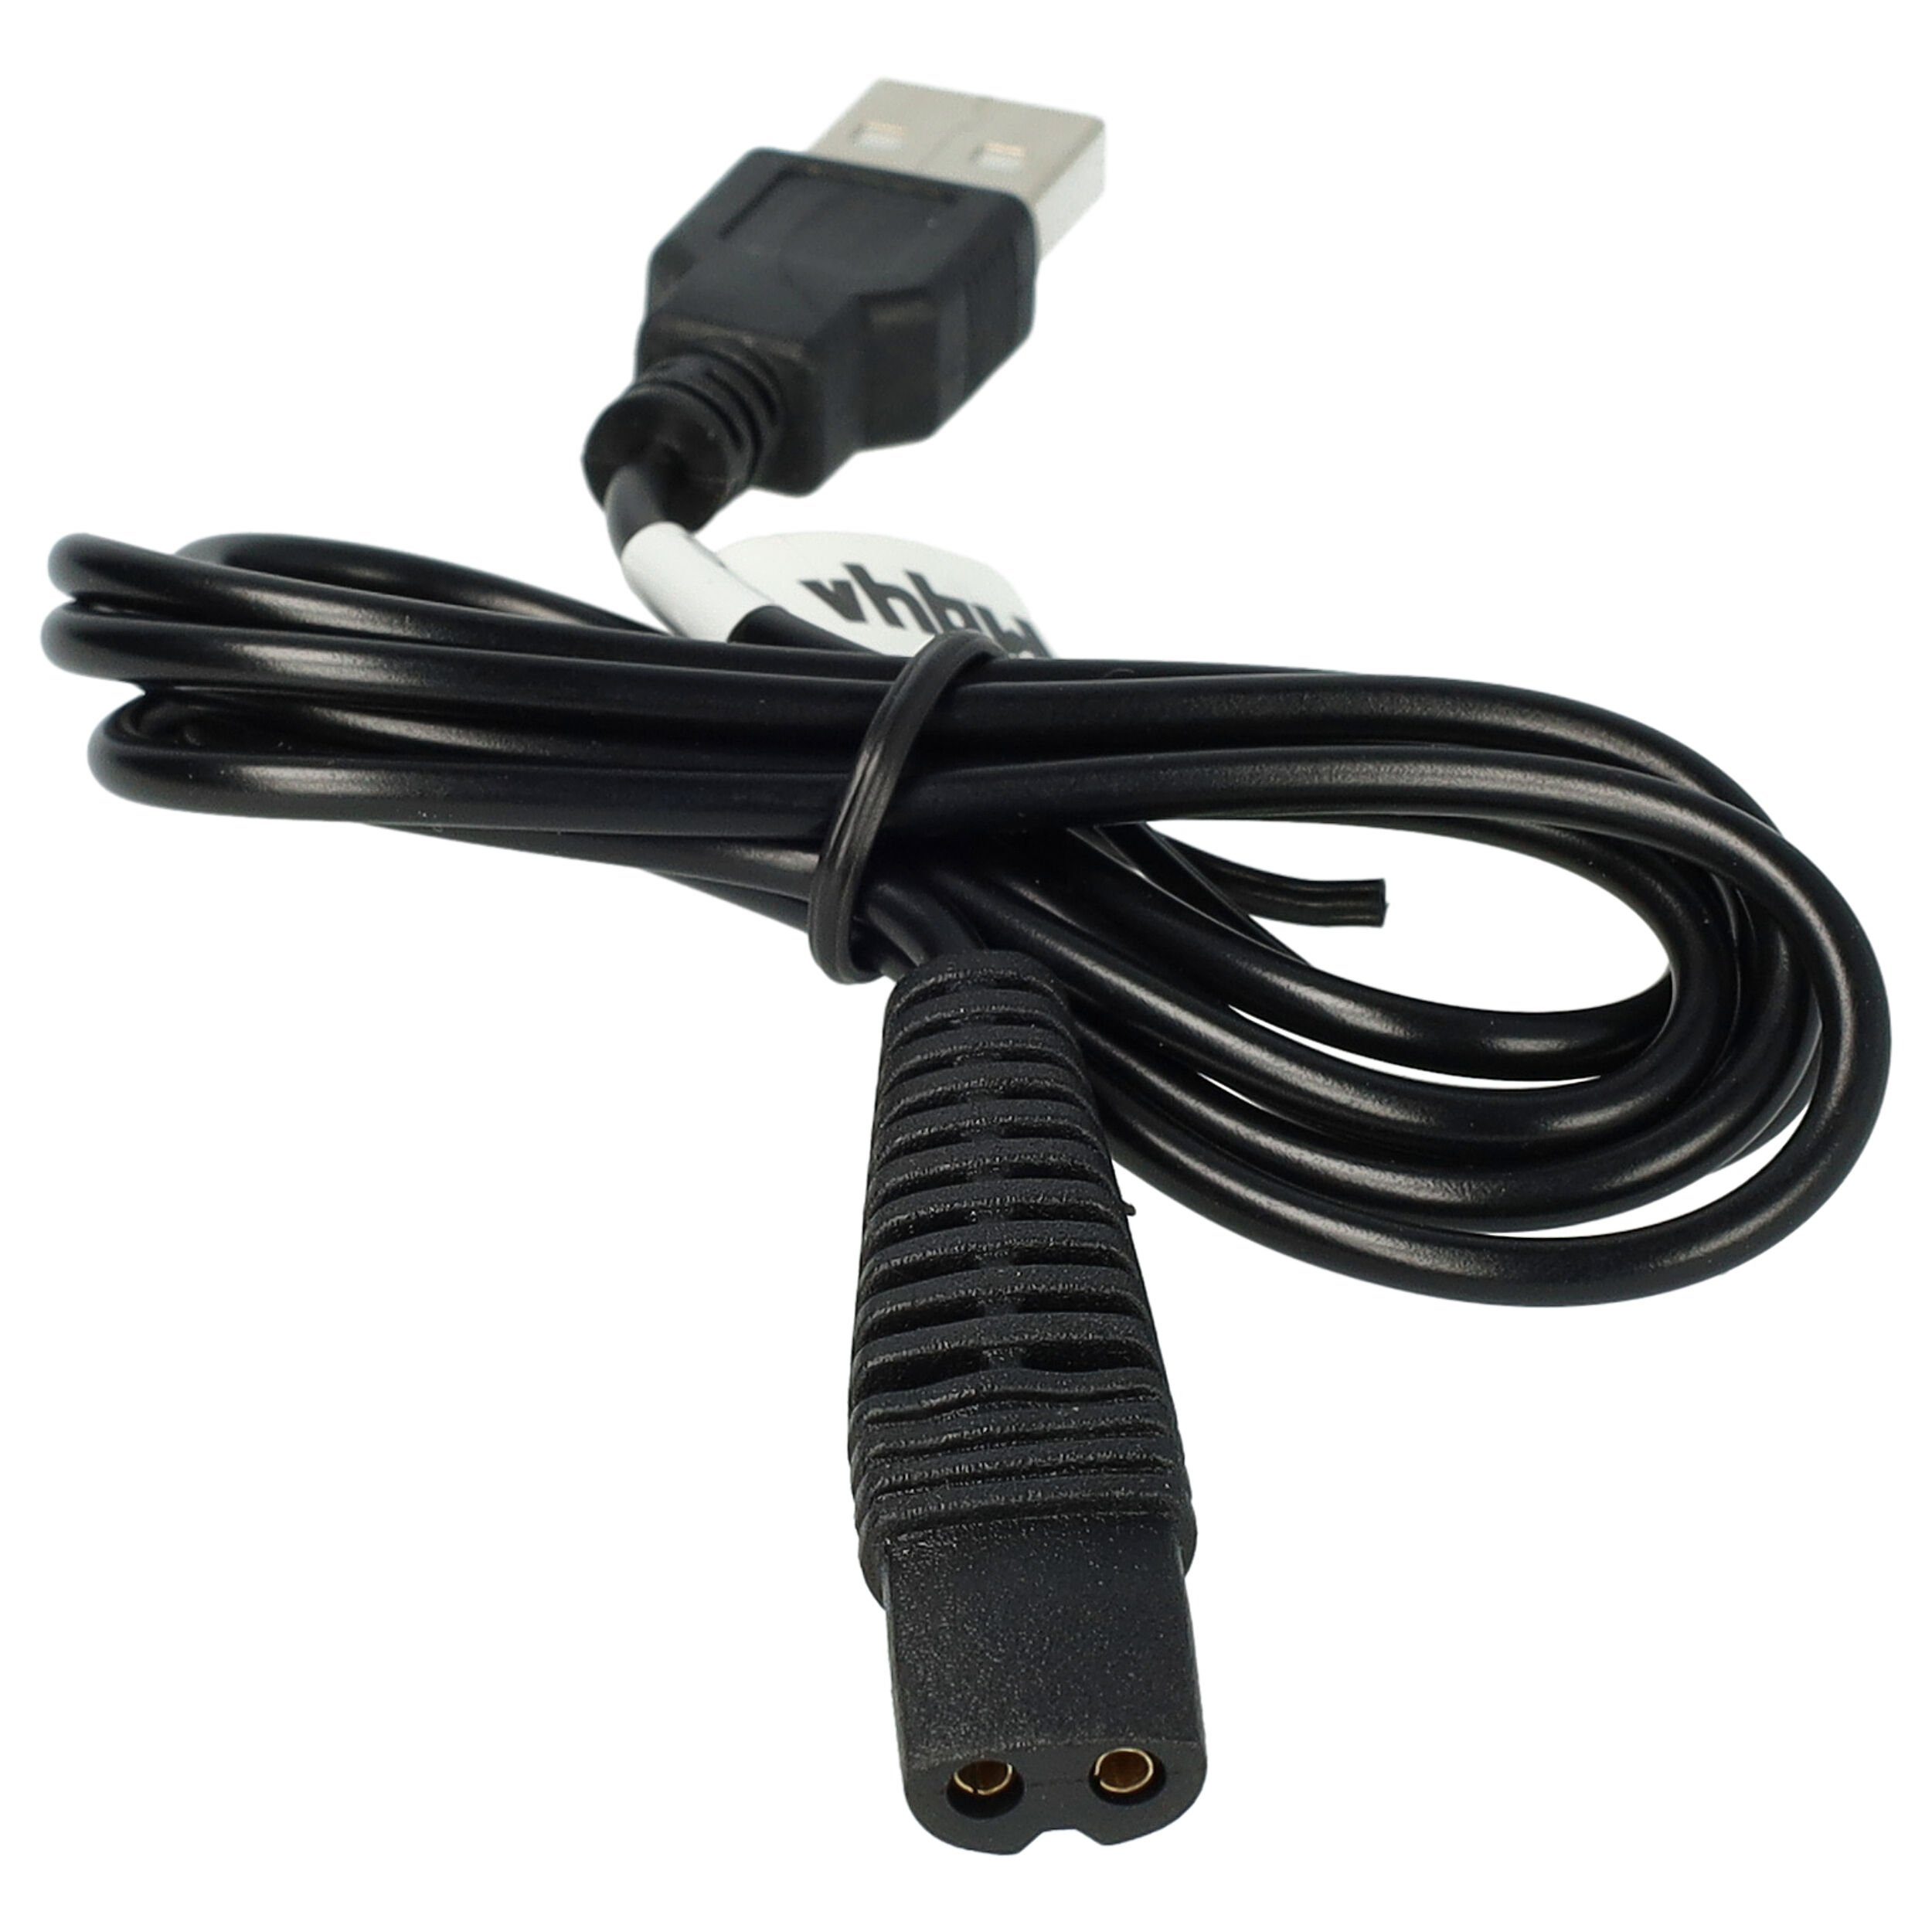 vhbw passend für Braun SmartControl3 Elektro-Kabel 5776, 3 Series TriControl